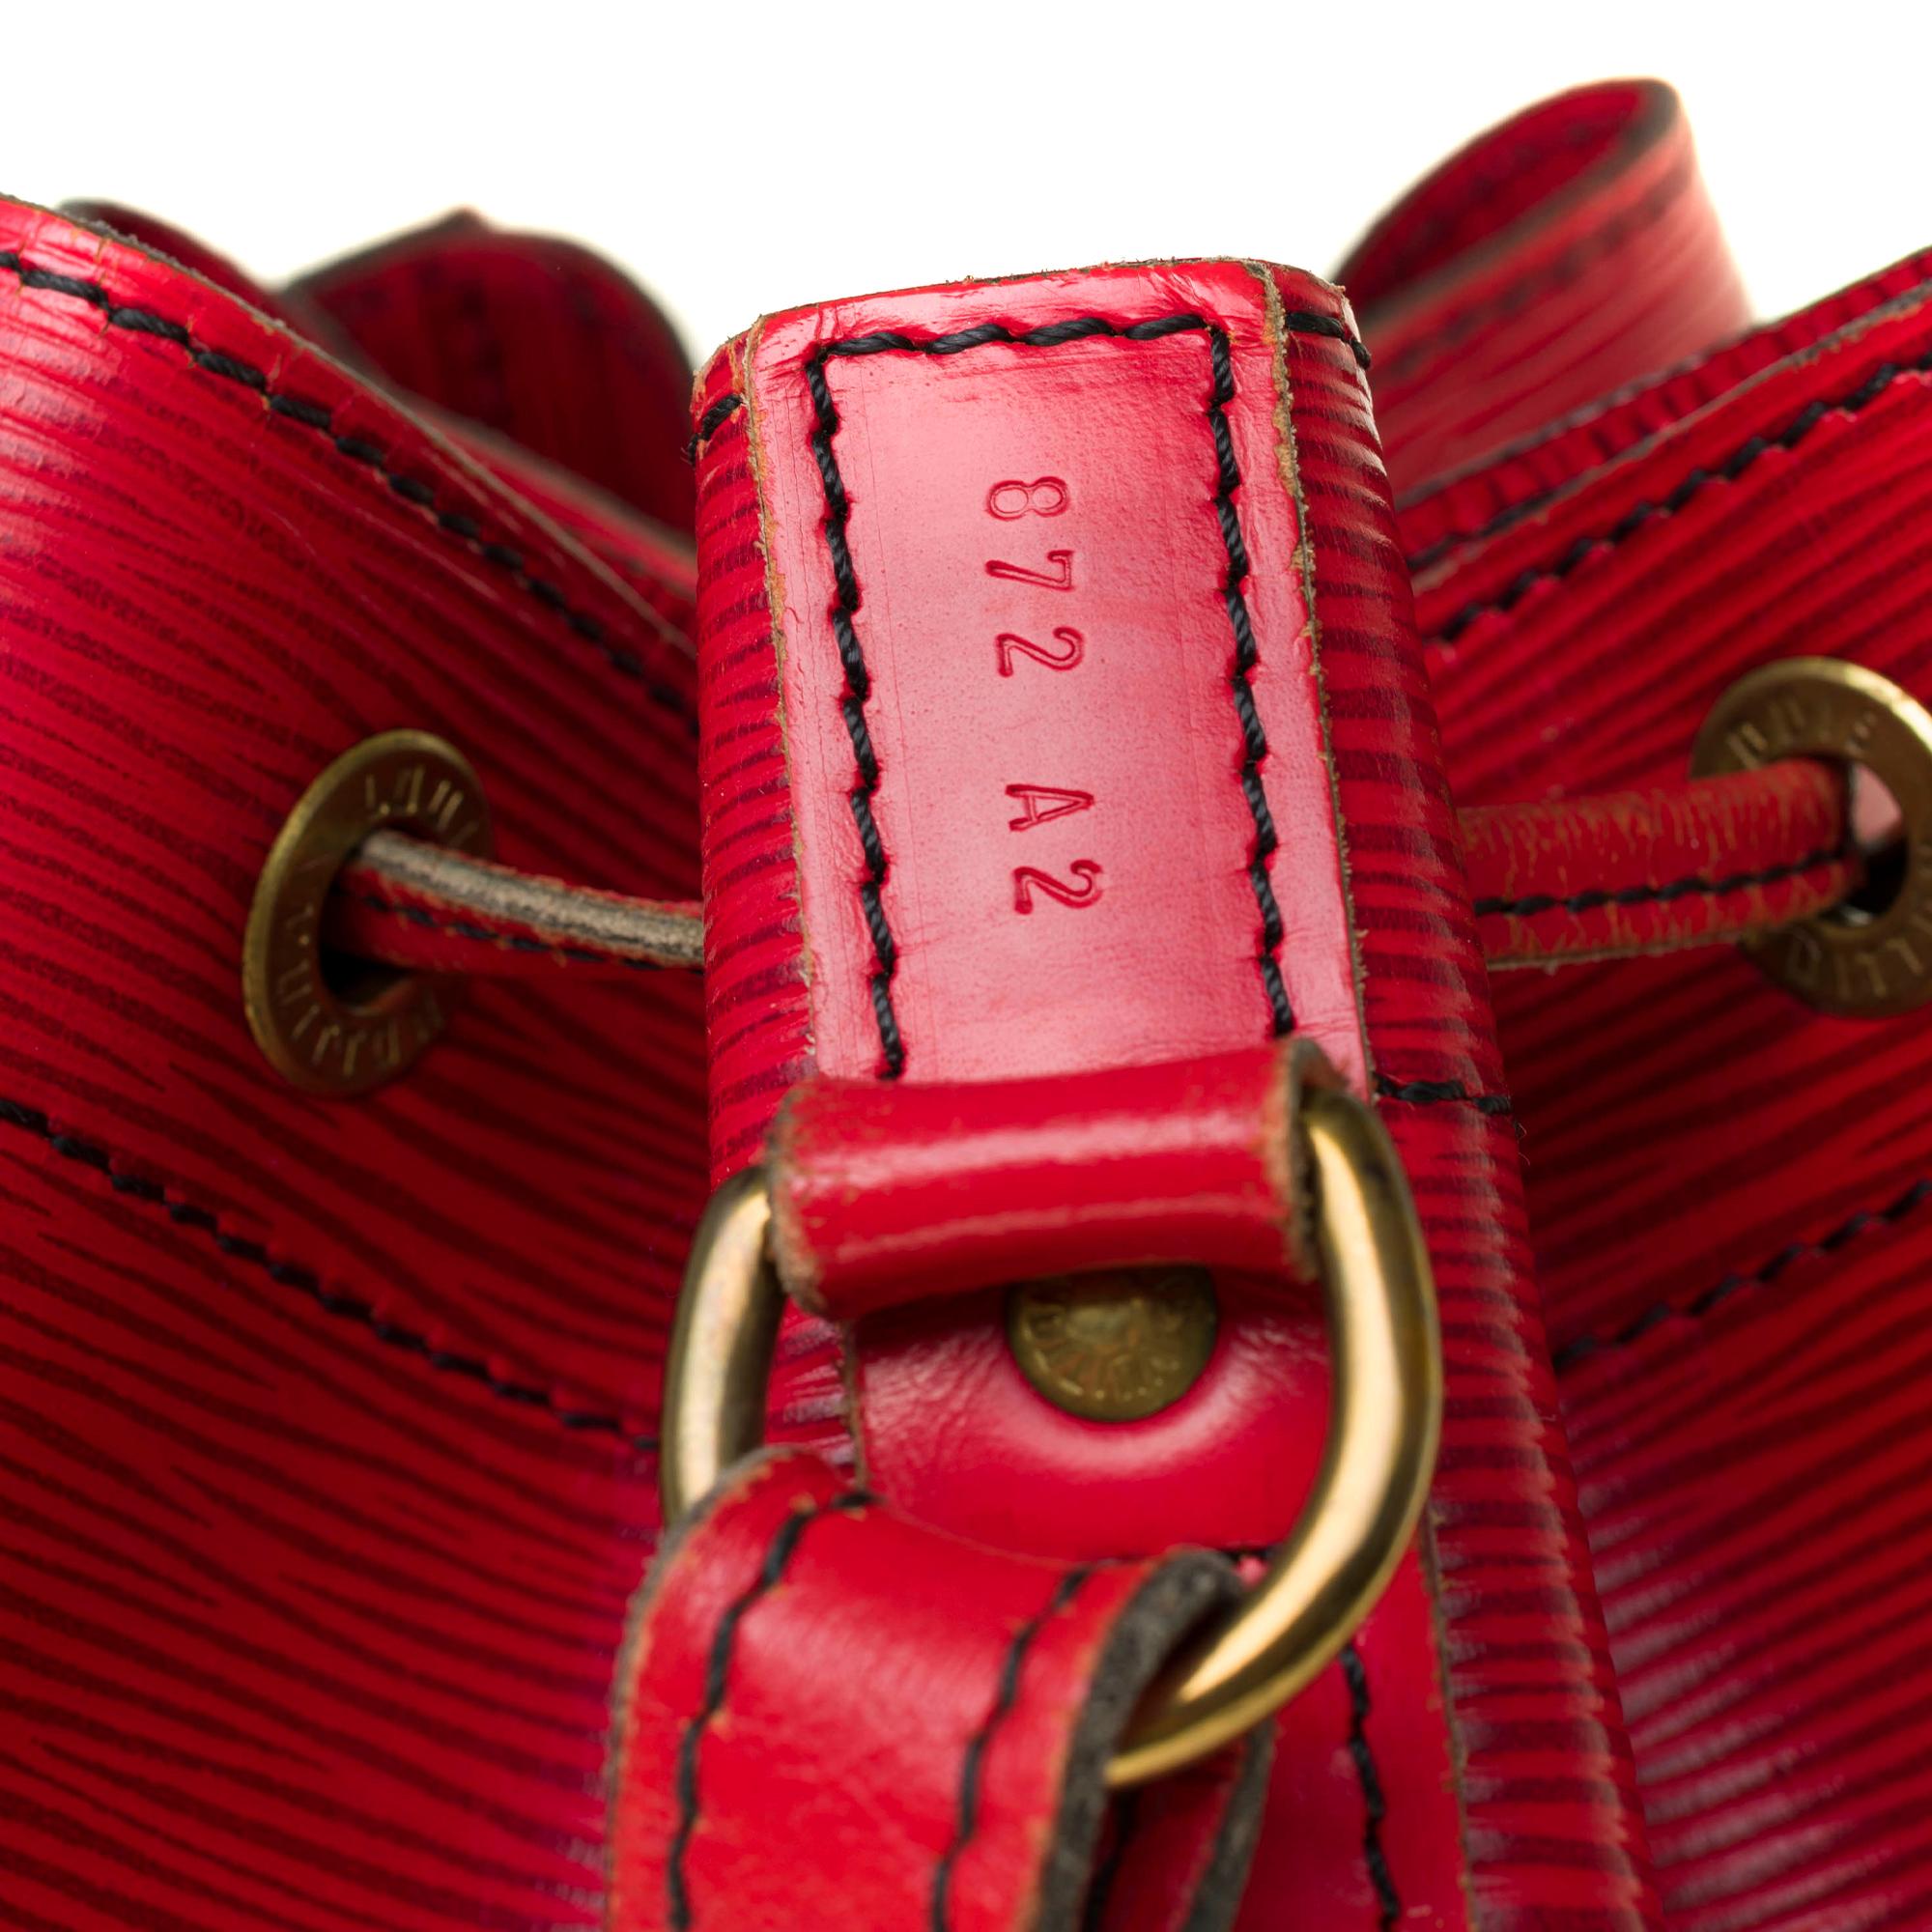 Louis Vuitton Noé Grand modele shoulder bag in red epi leather, gold hardware 1